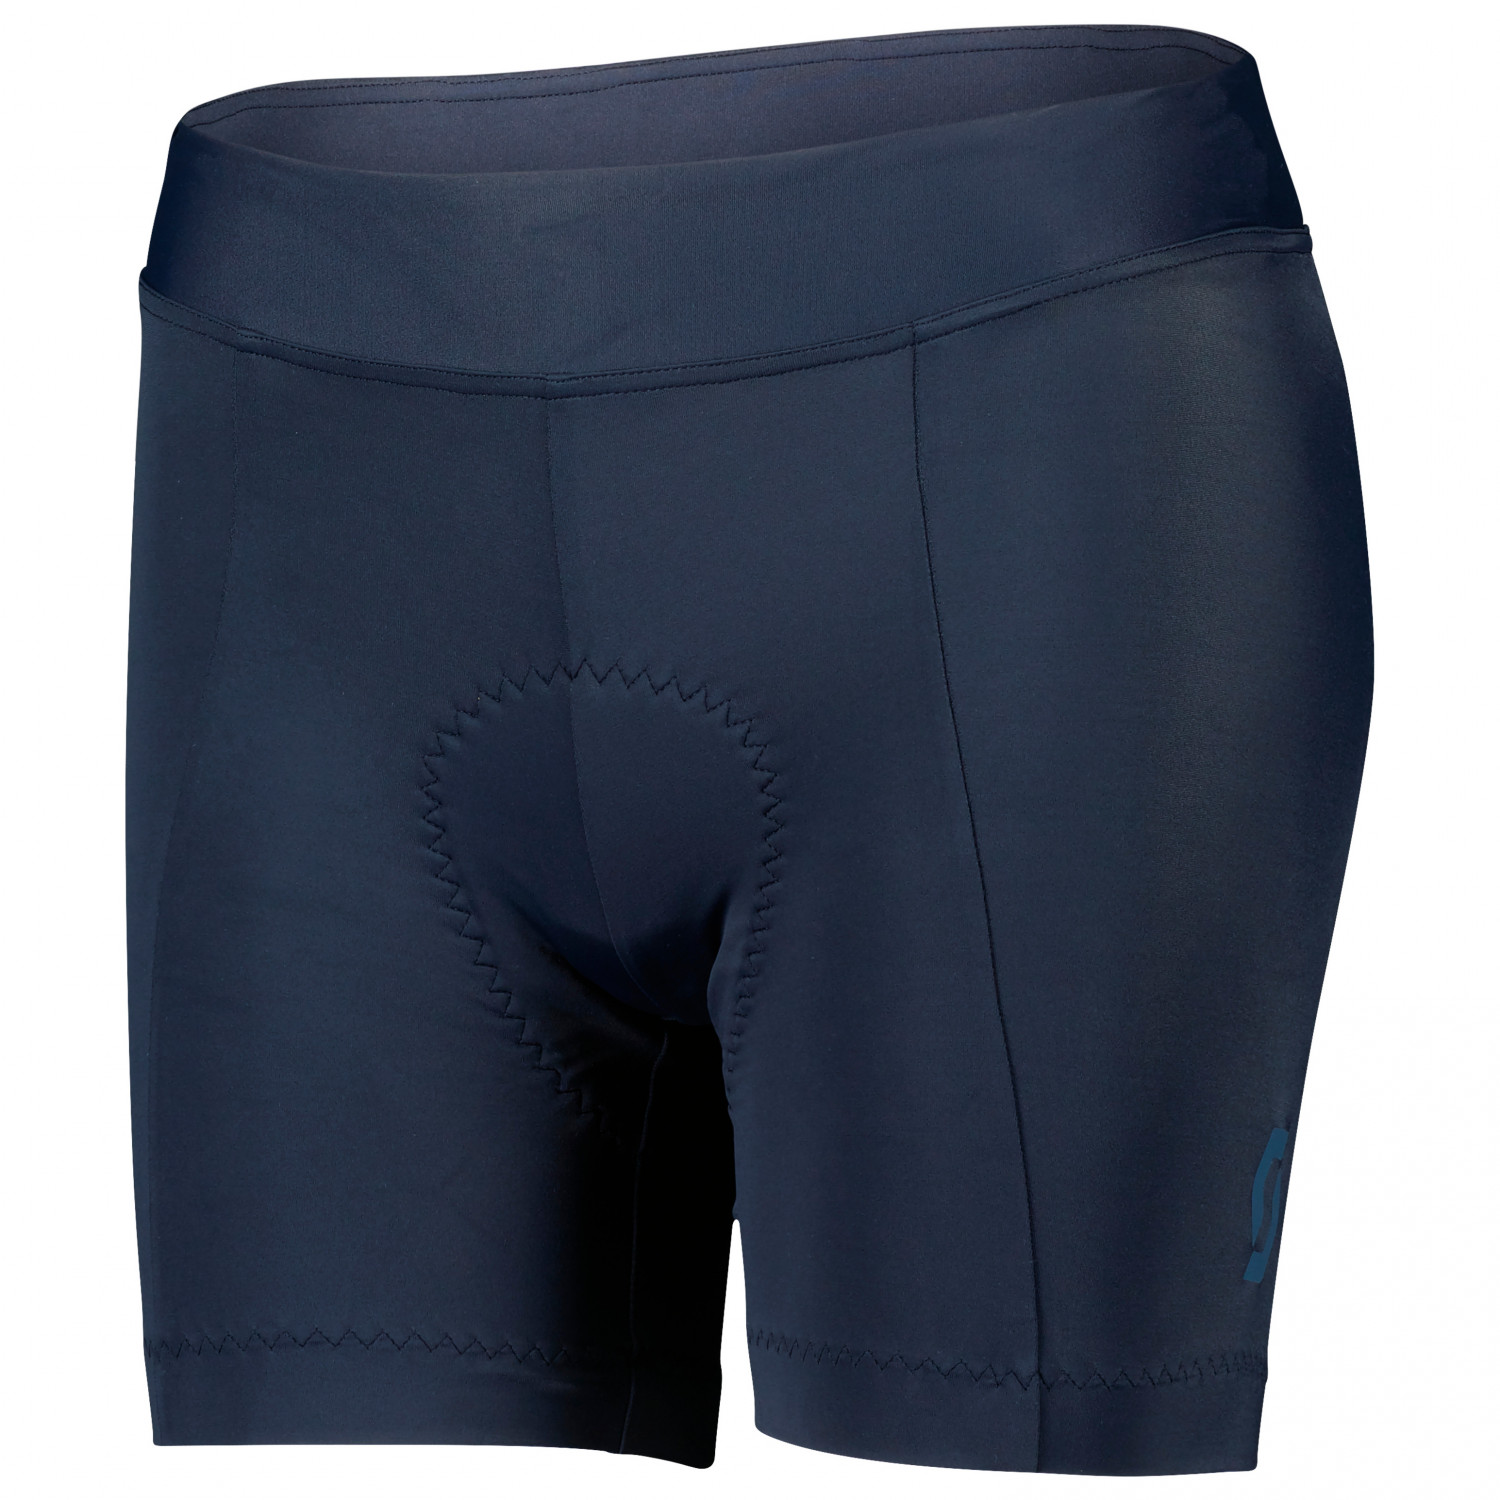 Велосипедные шорты Scott Women's Shorts Endurance 20 ++, цвет Dark Blue/Metal Blue спортивные шорты endurance цвет blue mirage